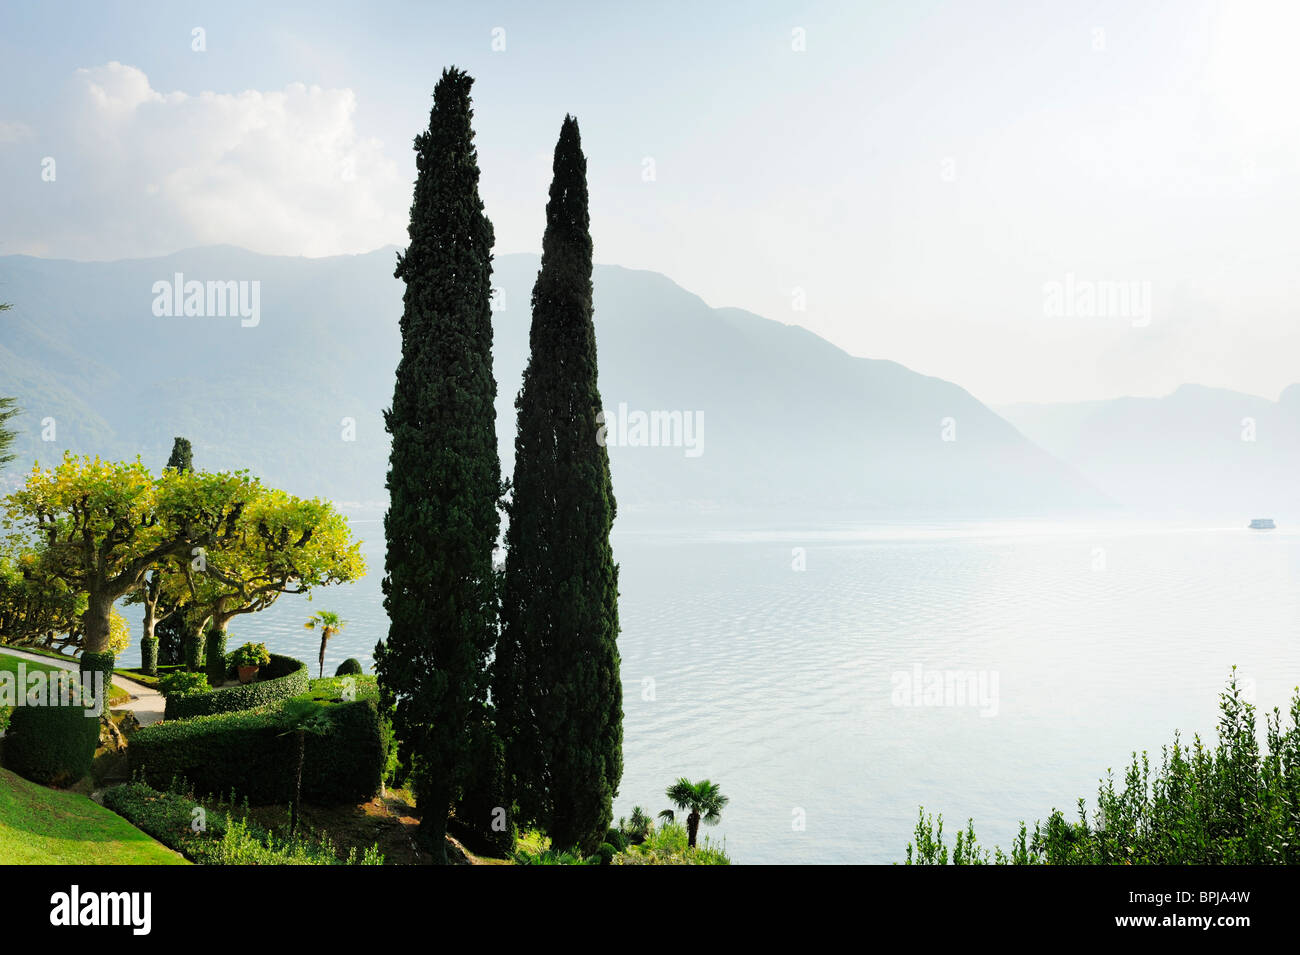 Cypresses, Villa del Balbianello, Lenno, Lake Como, Lombardy, Italy Stock Photo